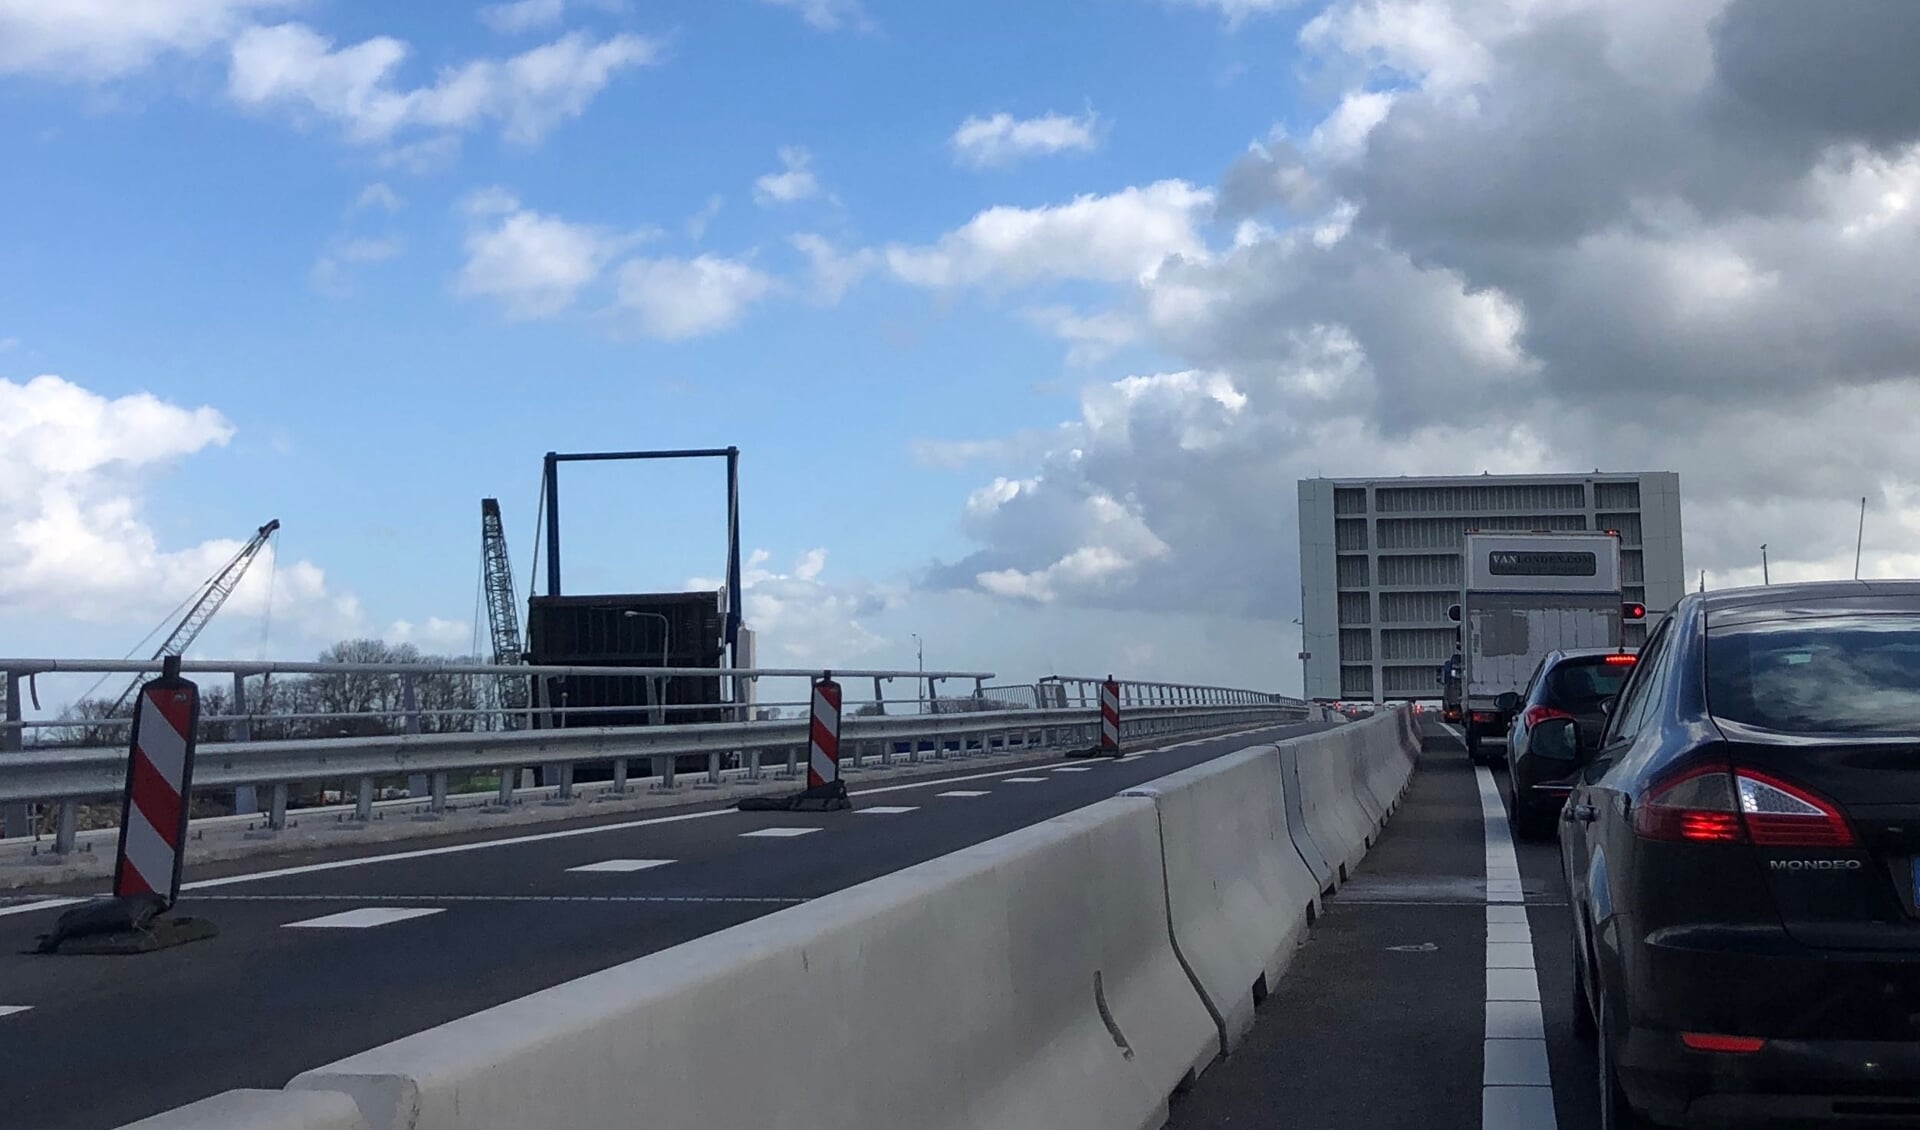 De nieuwe Roggebotbrug is vanaf 1 april toegevoegd aan de bediencentrale bruggen en sluizen van de provincie